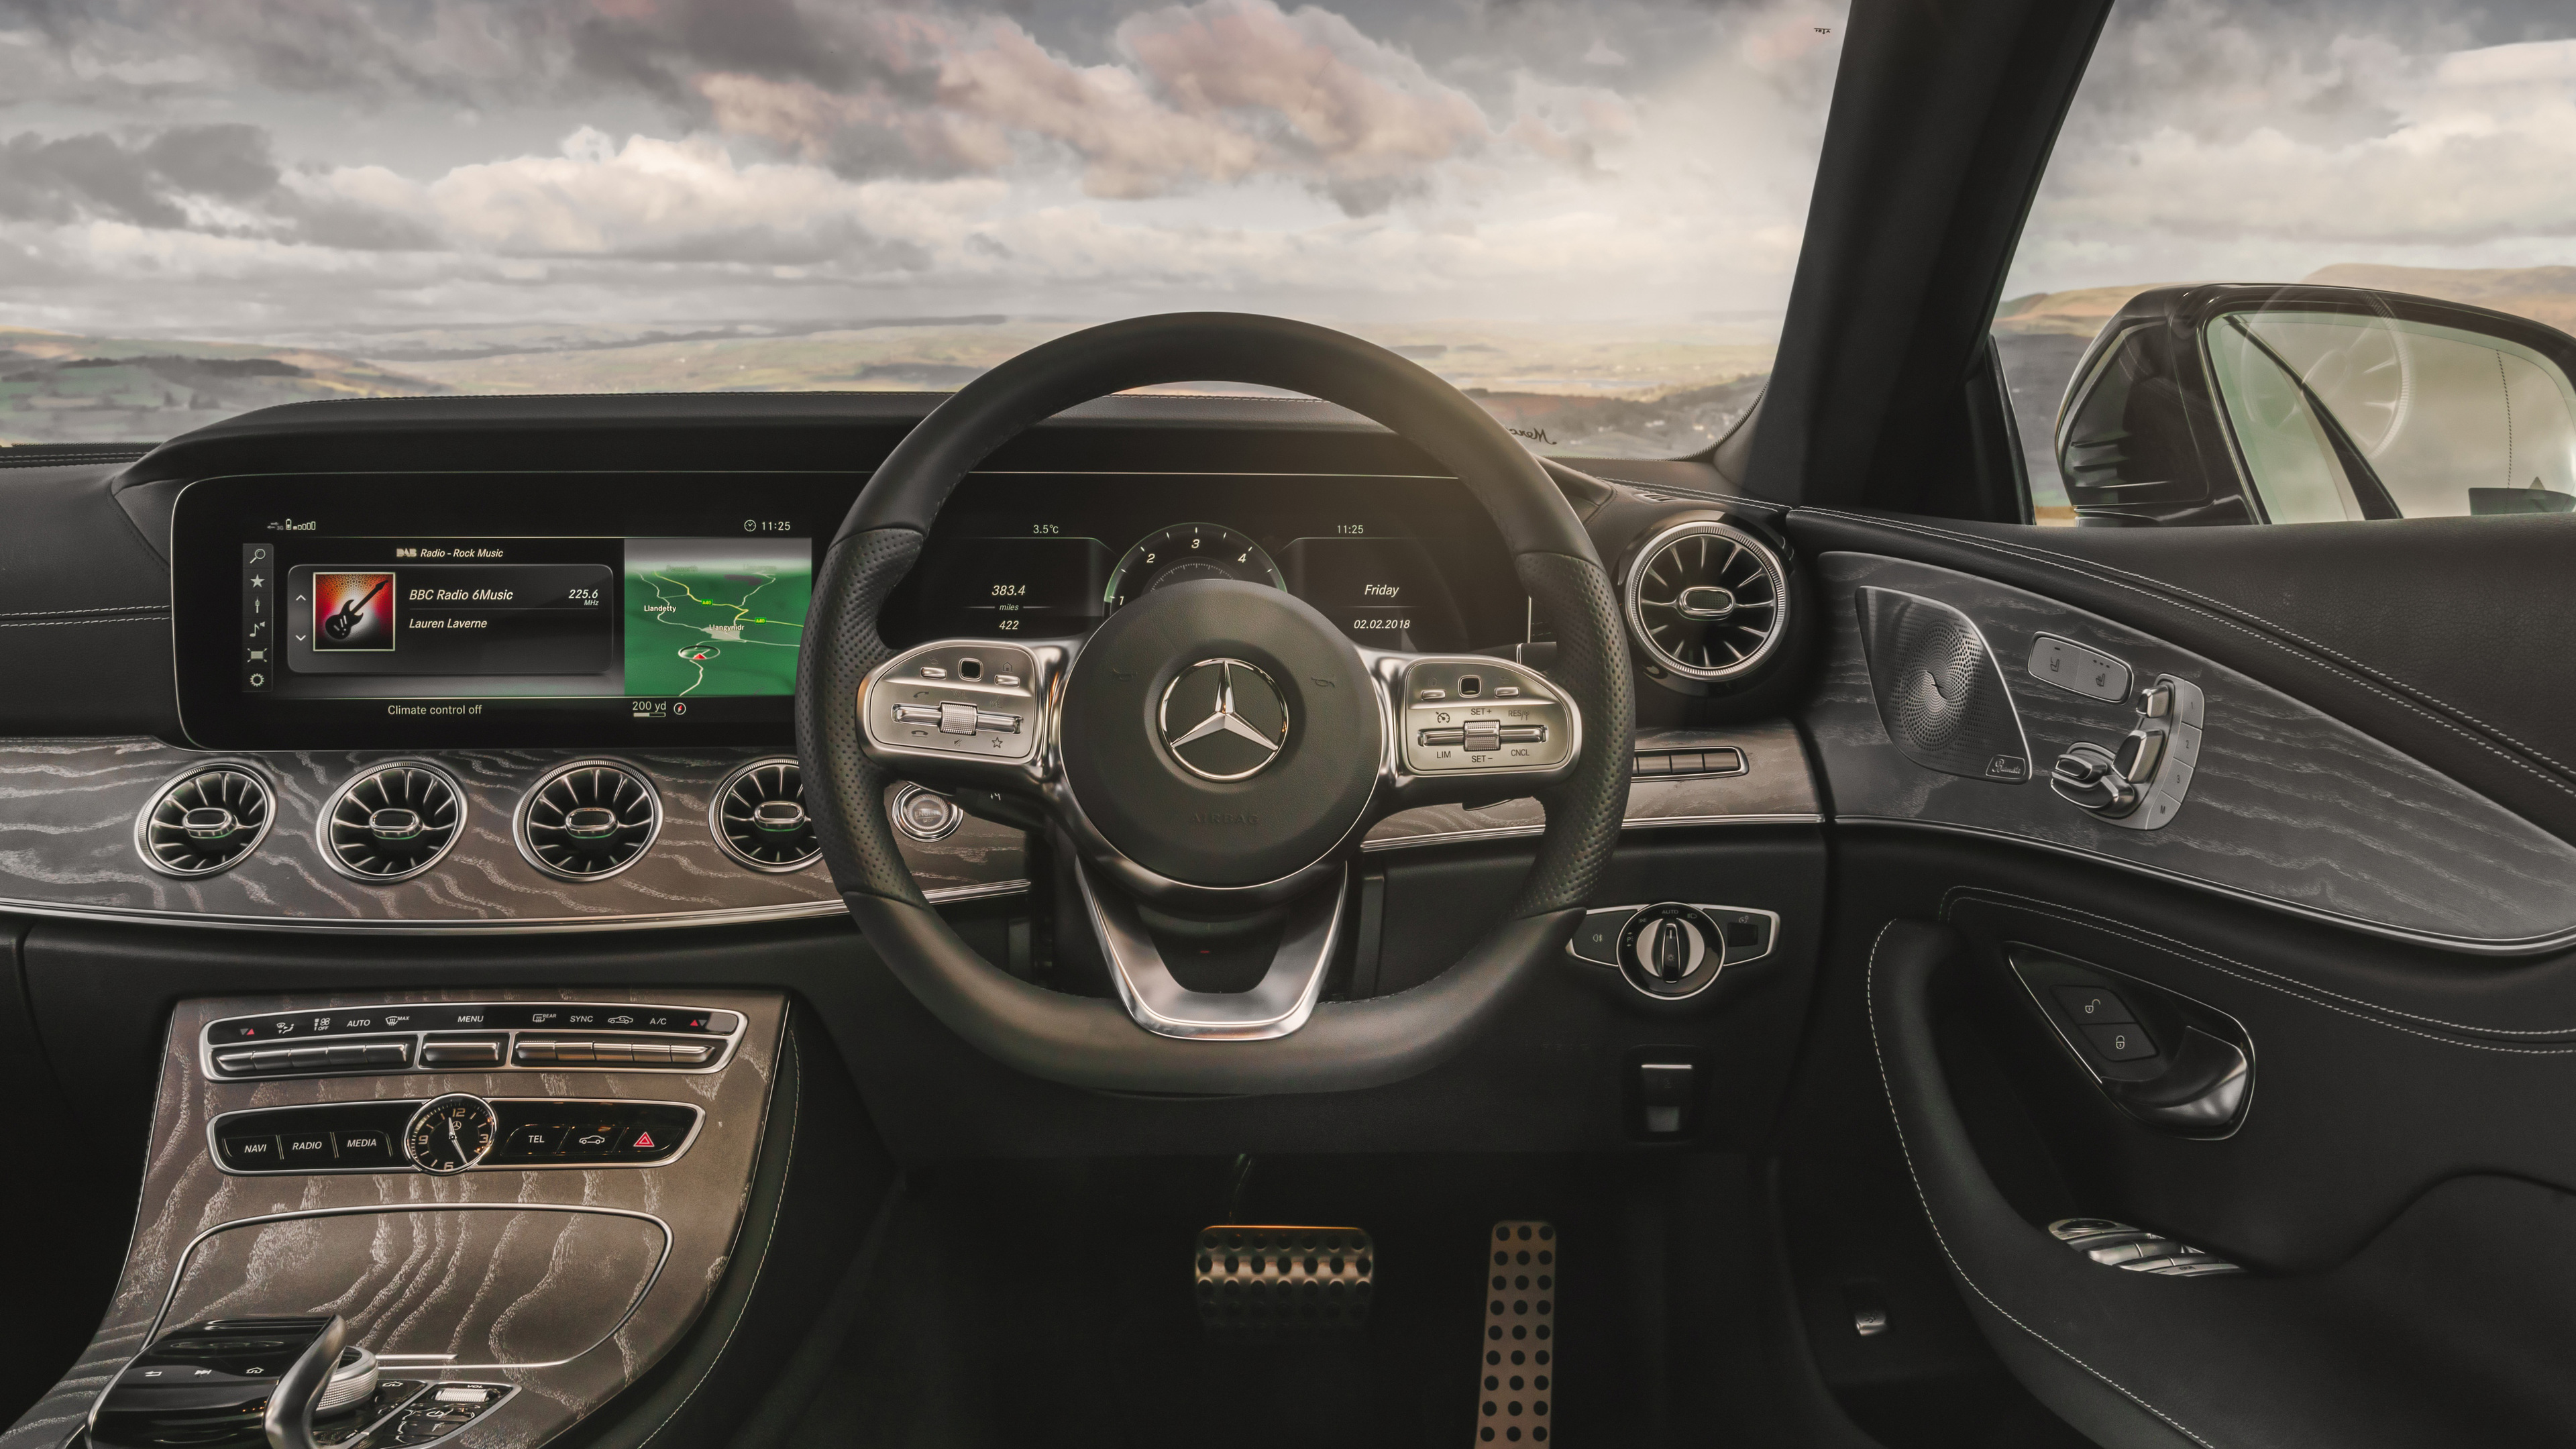 Mercedes-Benz Cls 400D Wallpapers